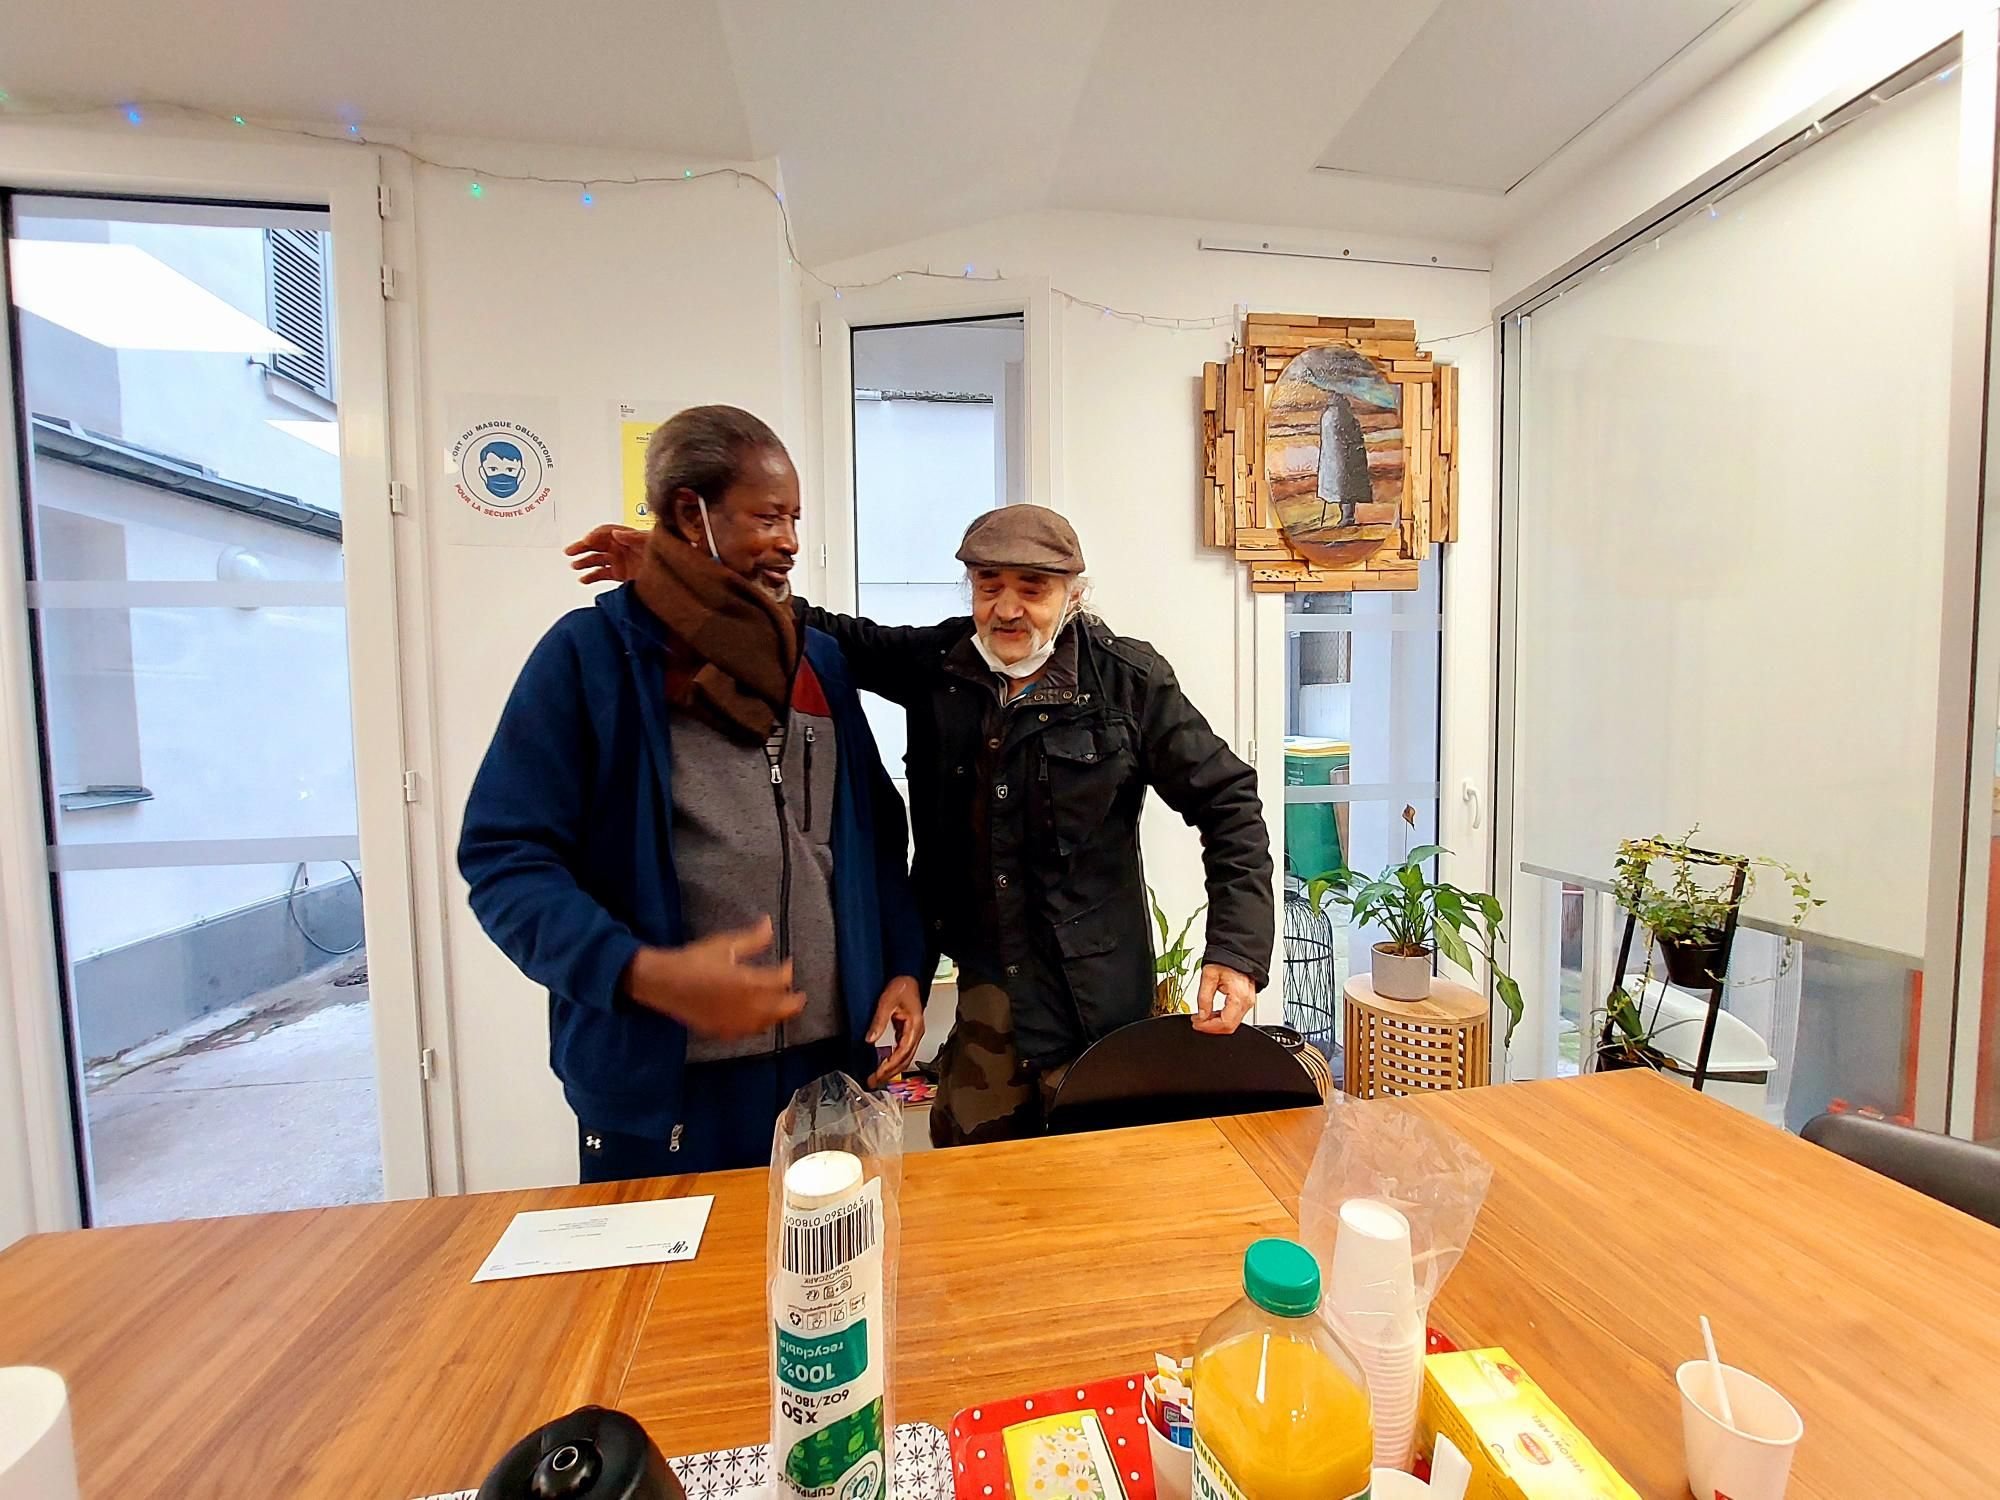 Paris (XIVe), rue Poirier-de-Narçay, le 10 janvier 2022. Ali (à gauche) et Pierrot vivent désormais dans cette «pension de famille» gérée par Emmaüs Solidarité. Une nouvelle vie et une nouvelle indépendance pour les deux hommes. LP/E.S.